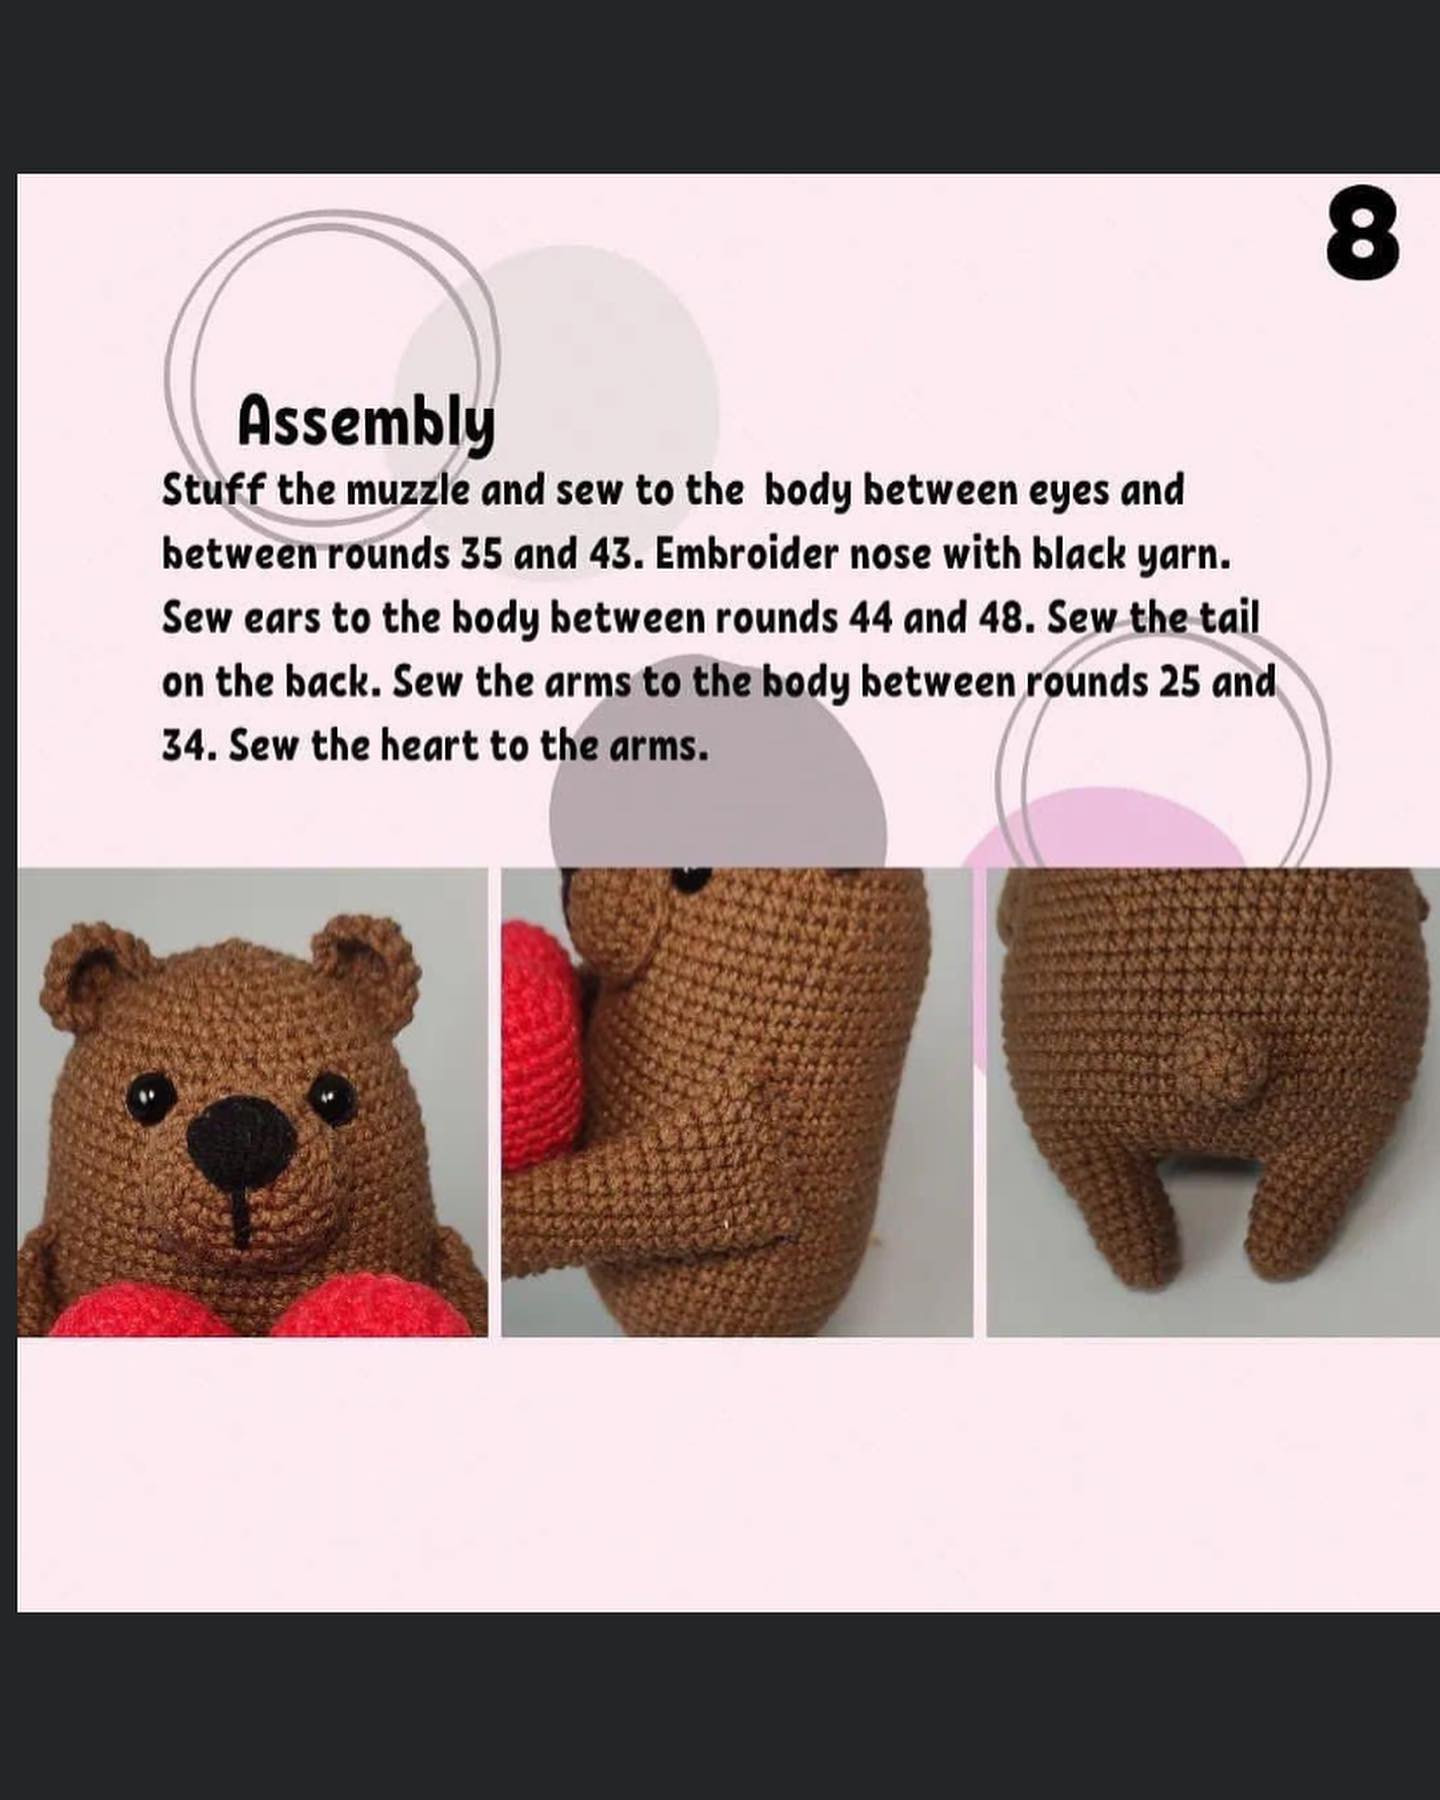 The bear crochet pattern hugs the heart